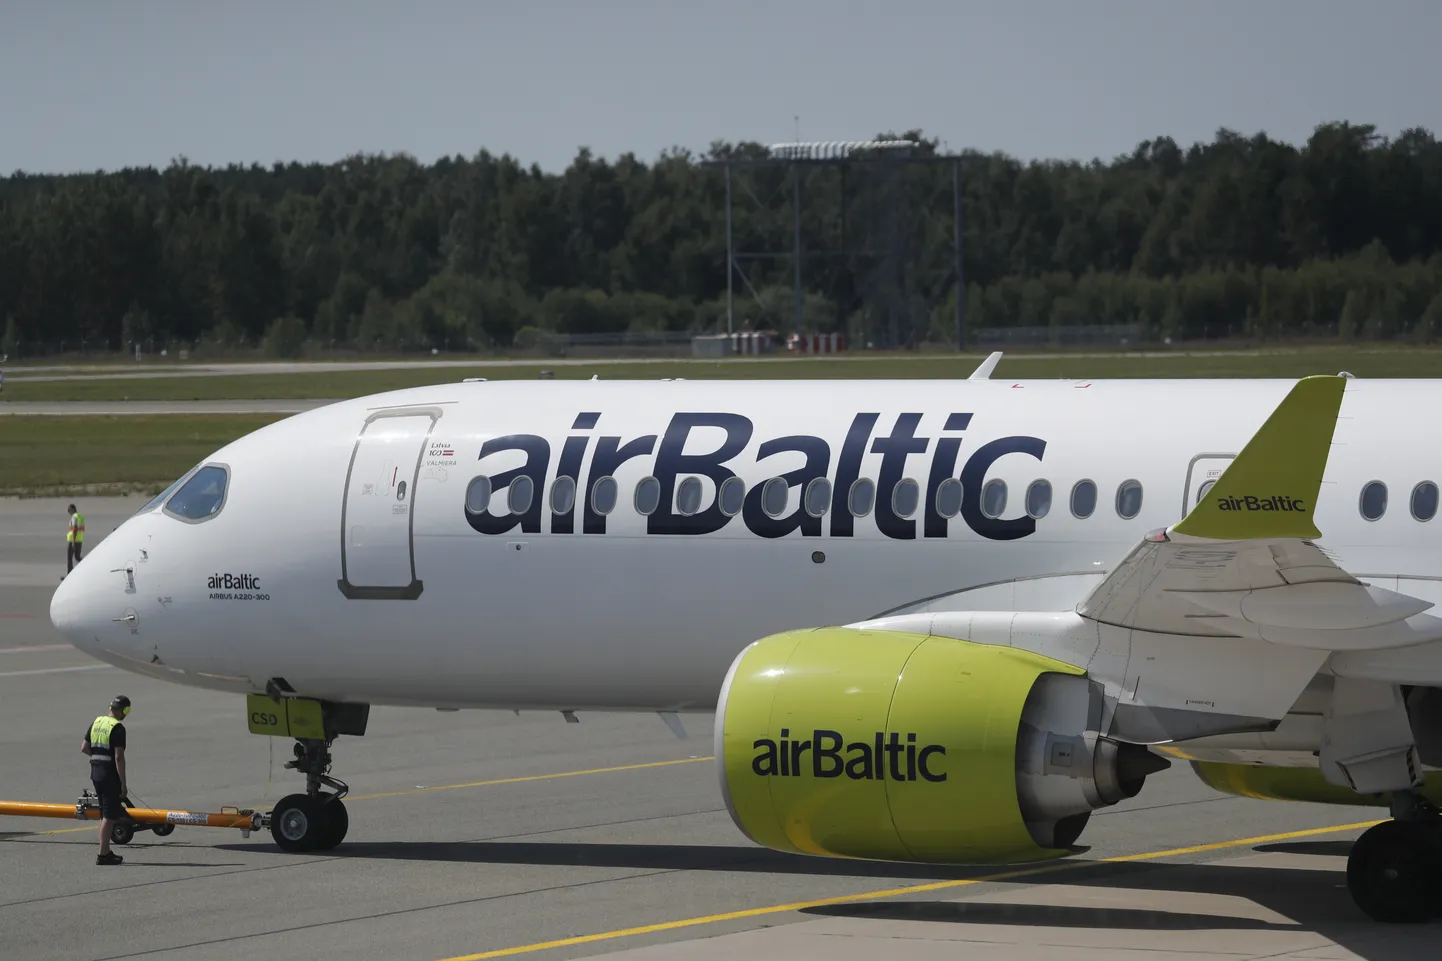 AirBalticu lennuk Airbus A220-300 Riia lennuväljal.